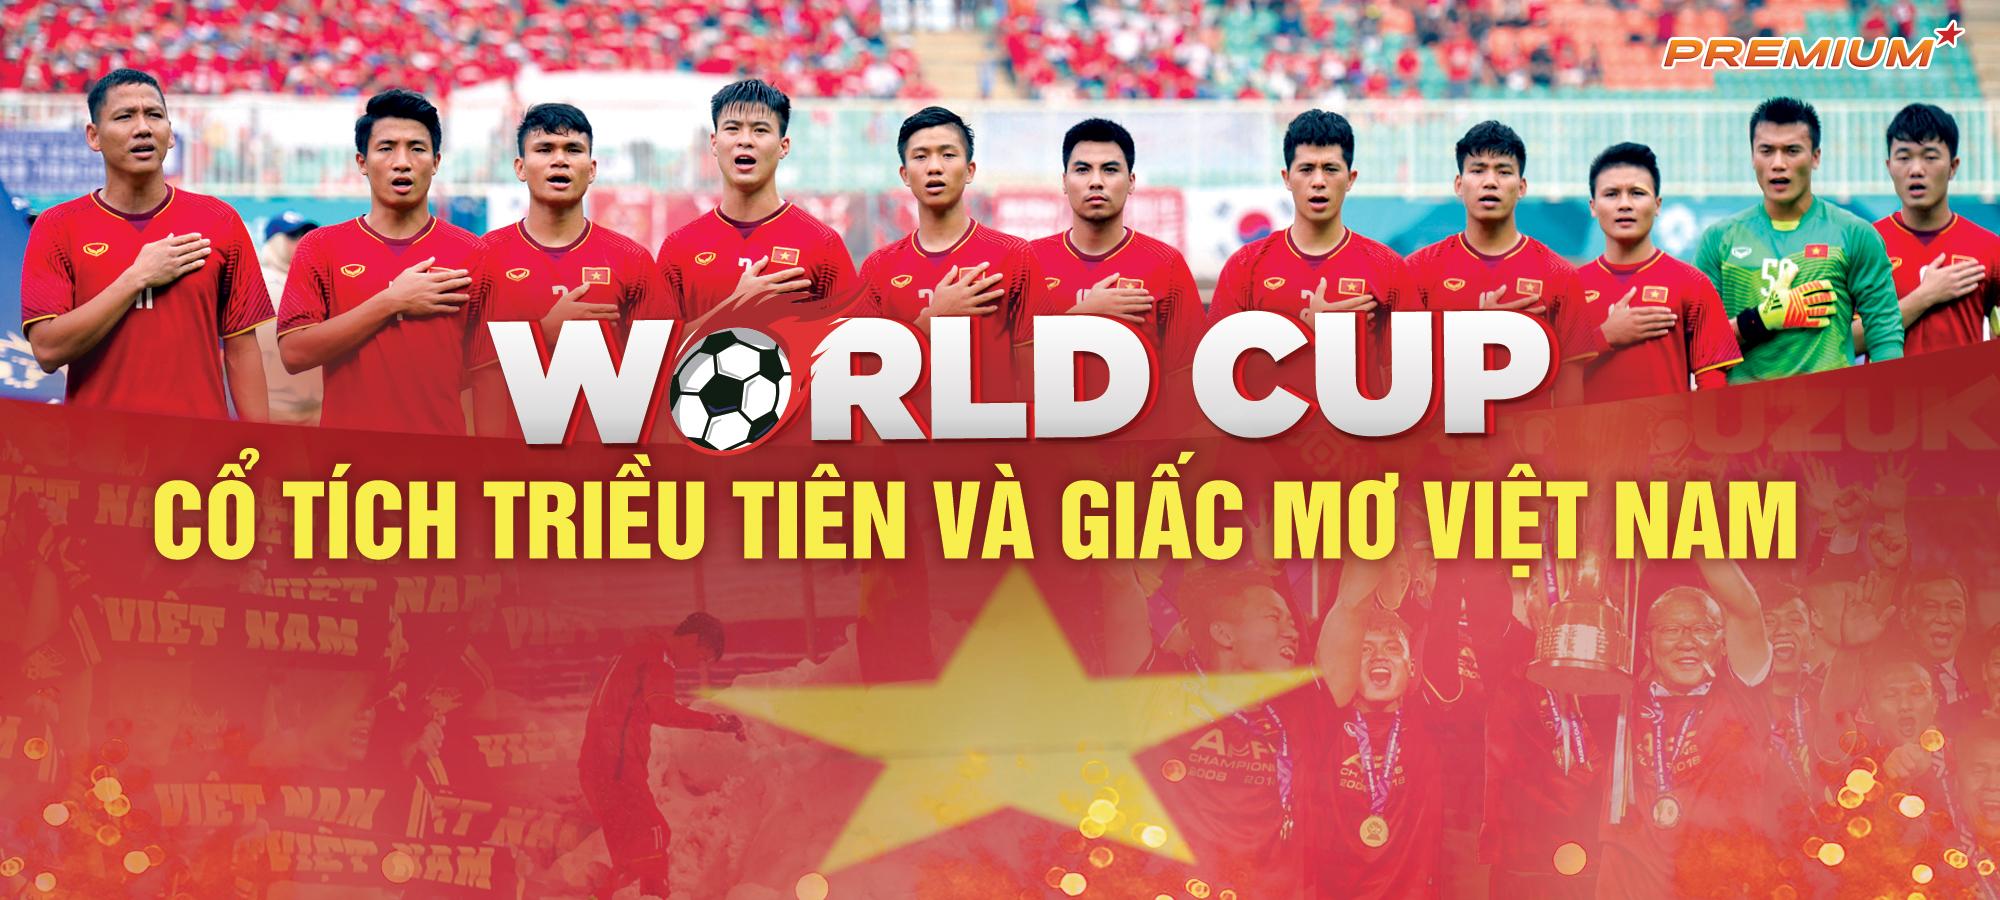 Triều Tiên và những câu chuyện cổ tích World Cup